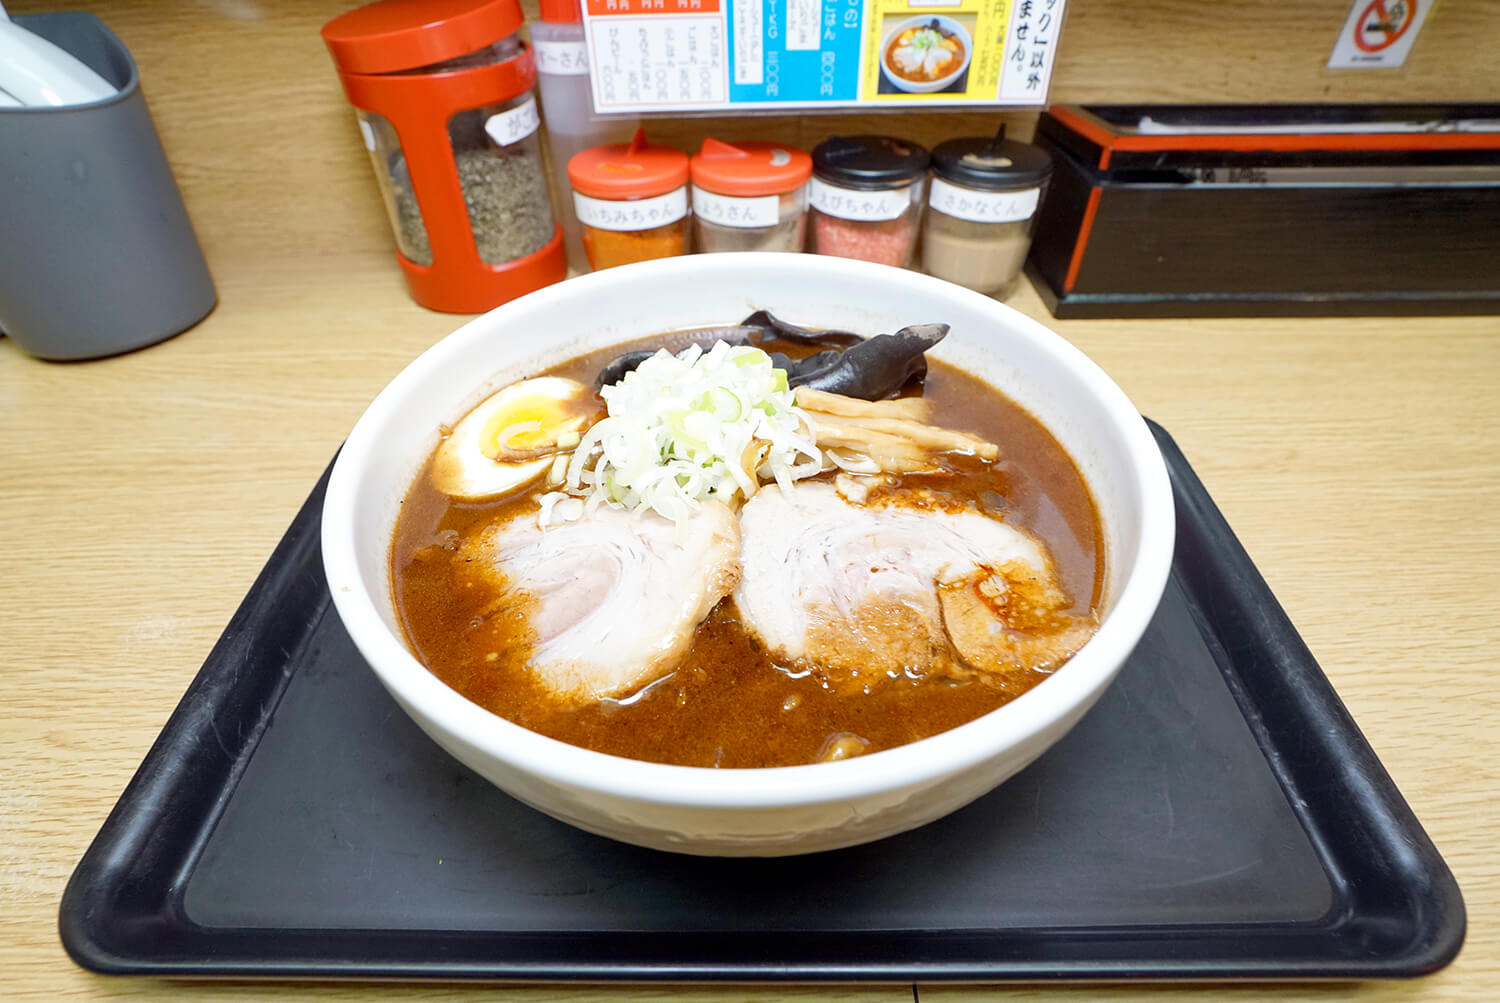 ニンニクの風味豊かで真っ黒な見た目が食欲をそそる「札幌ブラック」（900円）